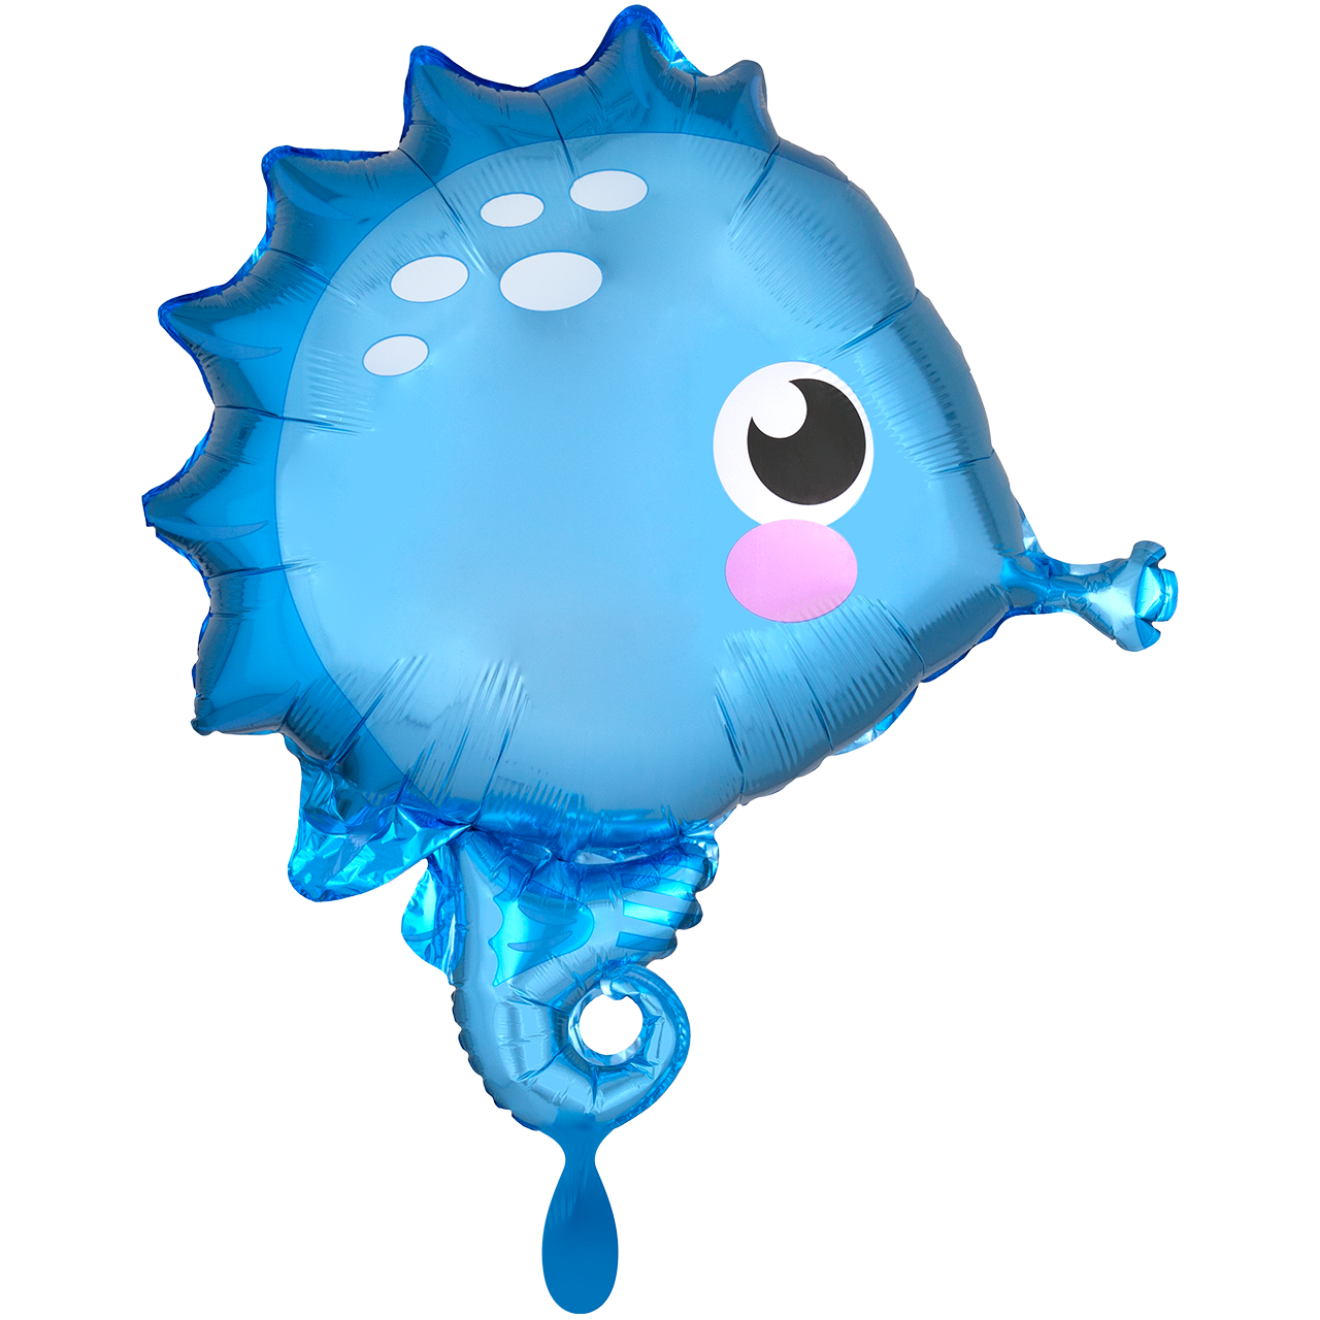 1 Balloon - Seahorse